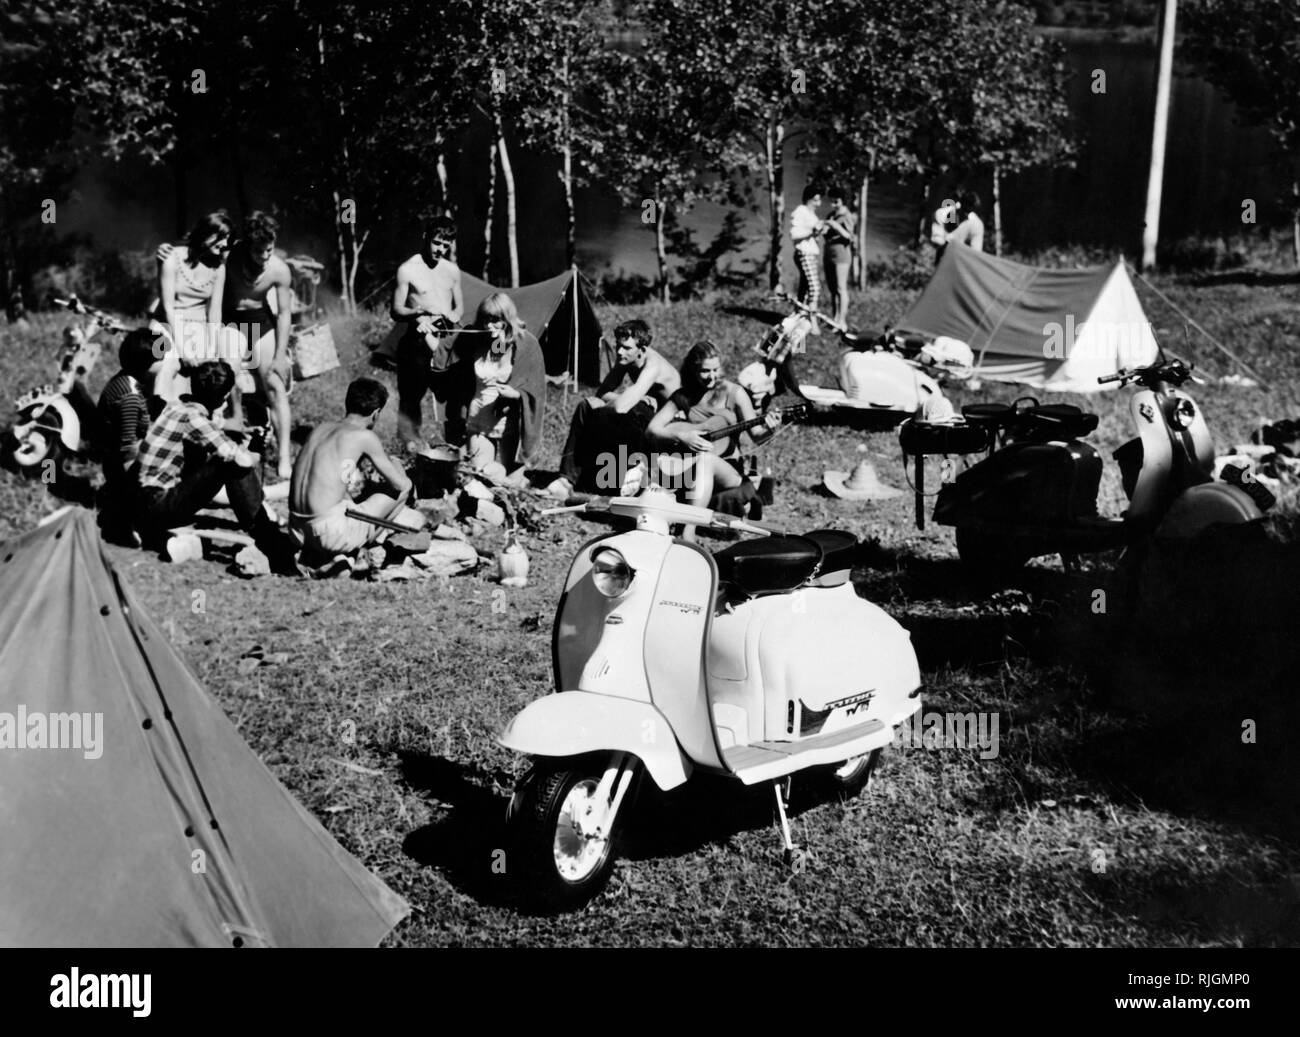 L'Italia, camping, vespa, 1960-70 Foto Stock